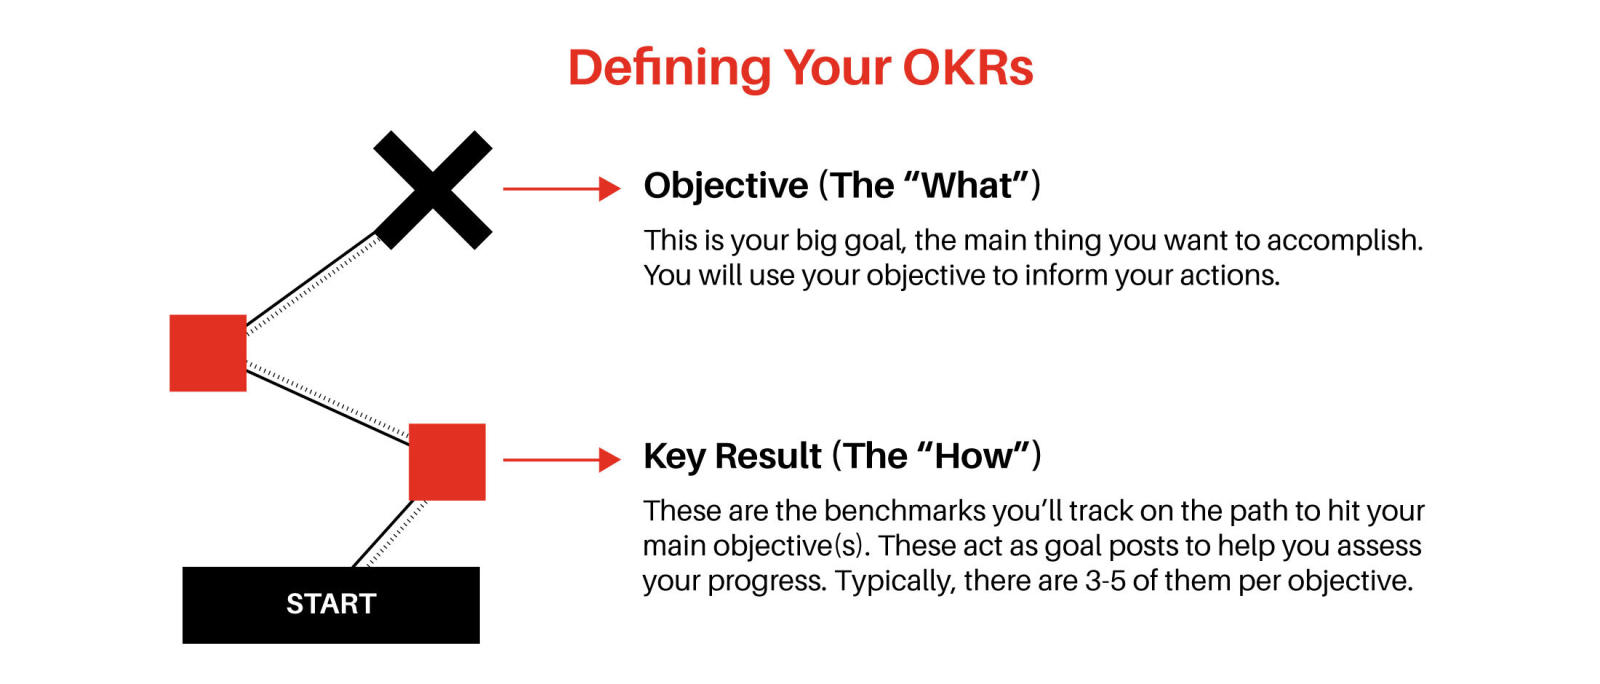 كيفية تحقيق الأهداف.. إليك نصائح وطرق عملية مجربة، الأهداف والنتائج الرئيسية (Okrs) وأهميتها في مساعدتك لتحقيق أهدافك.